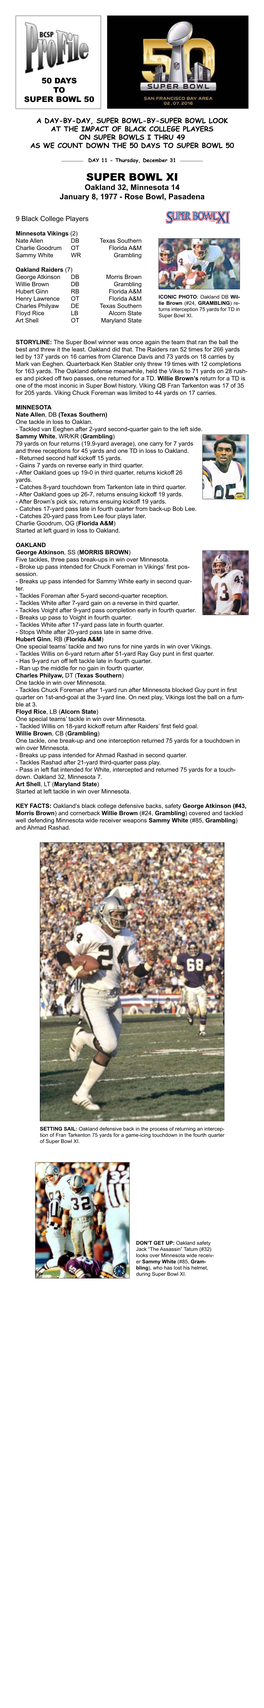 Super Bowl XI Oakland 32, Minnesota 14 January 8, 1977 - Rose Bowl, Pasadena